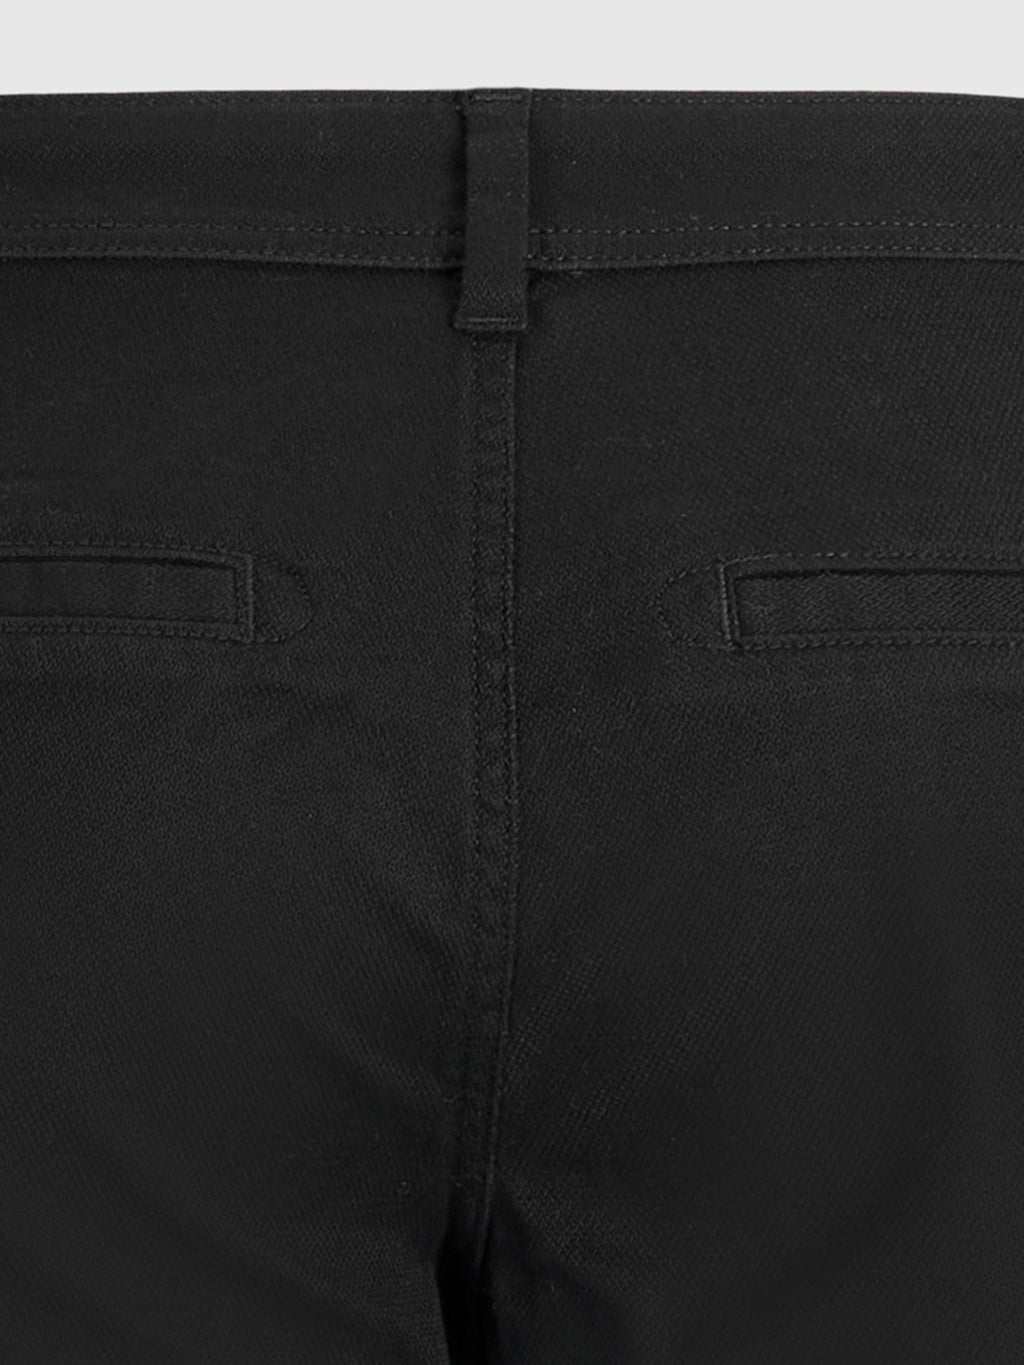 Originalne hlače strukture performansi (redovite) - crne